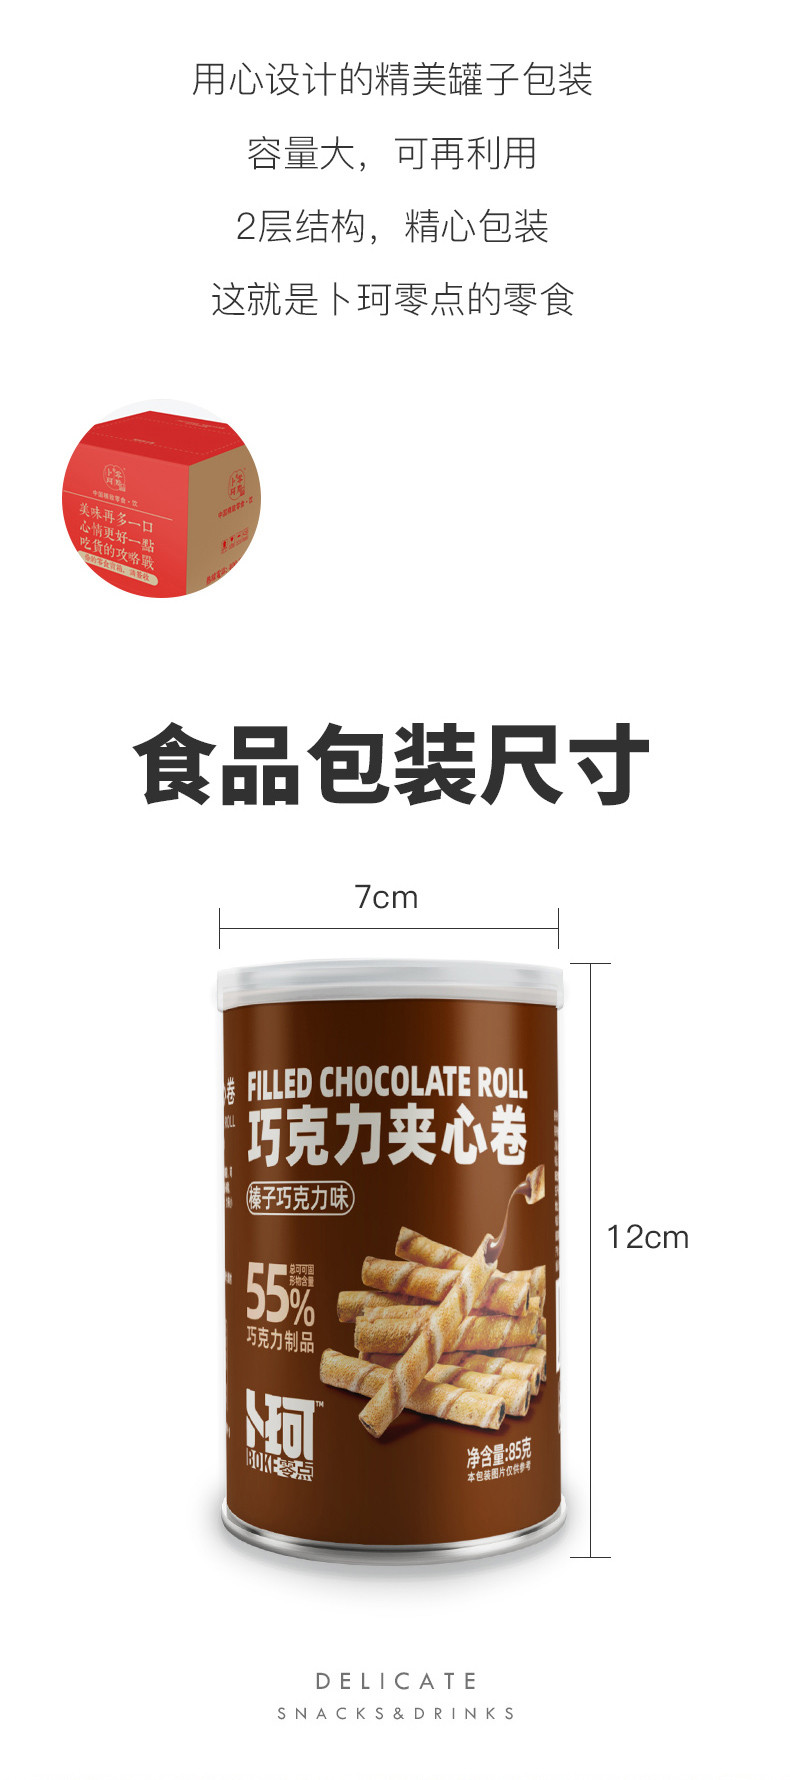 卜珂零点 2罐巧克力夹心卷85g/罐 榛子味/黑巧克力味 休闲零食